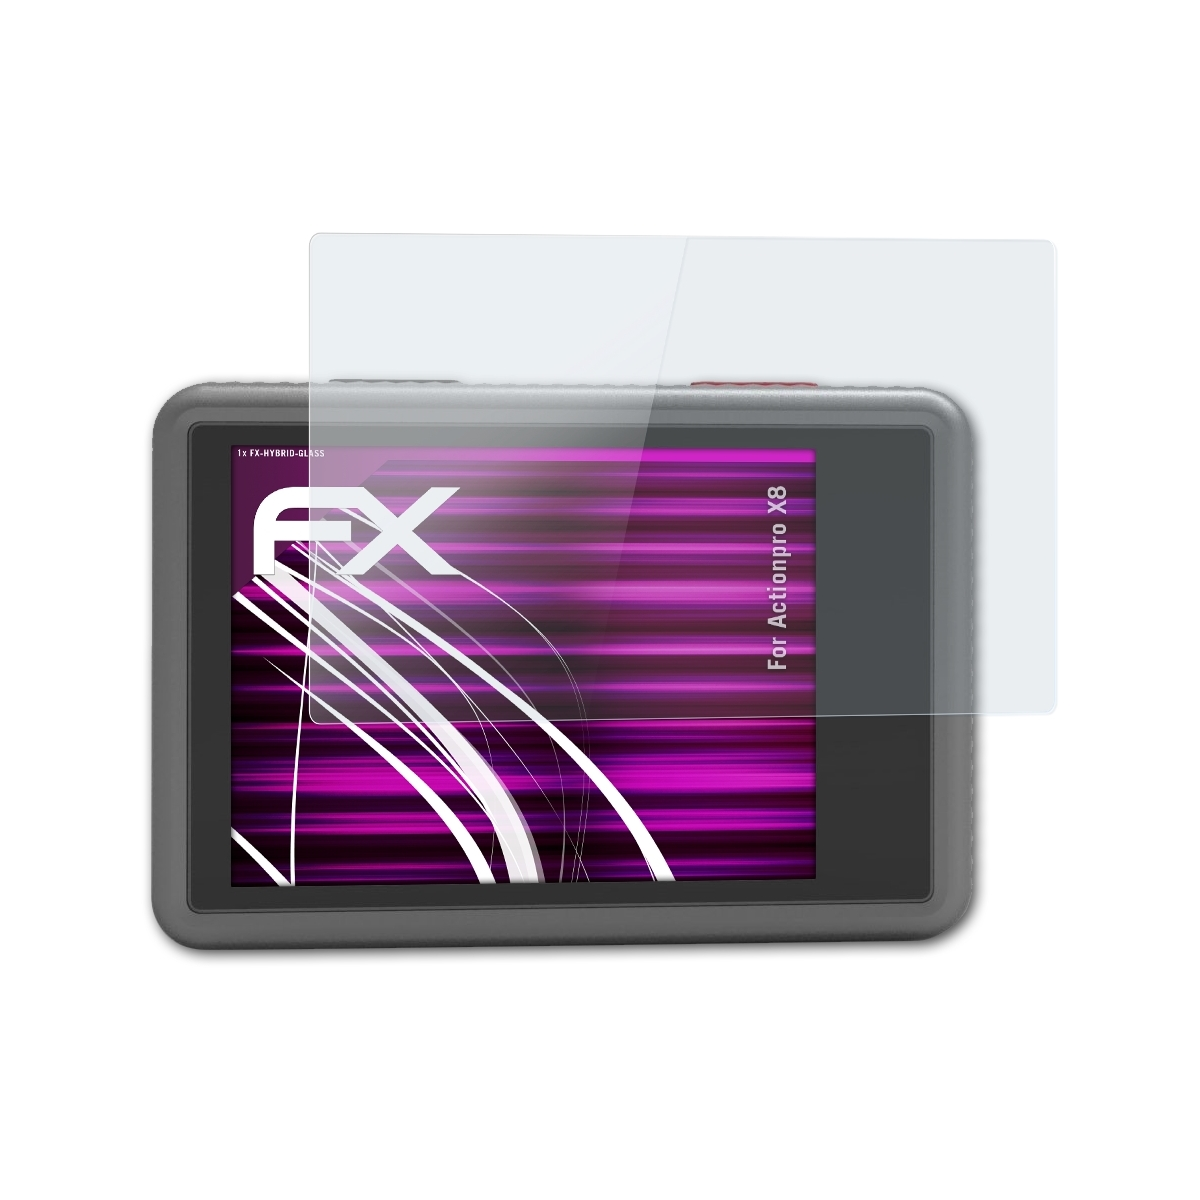 ATFOLIX FX-Hybrid-Glass X8) Actionpro Schutzglas(für